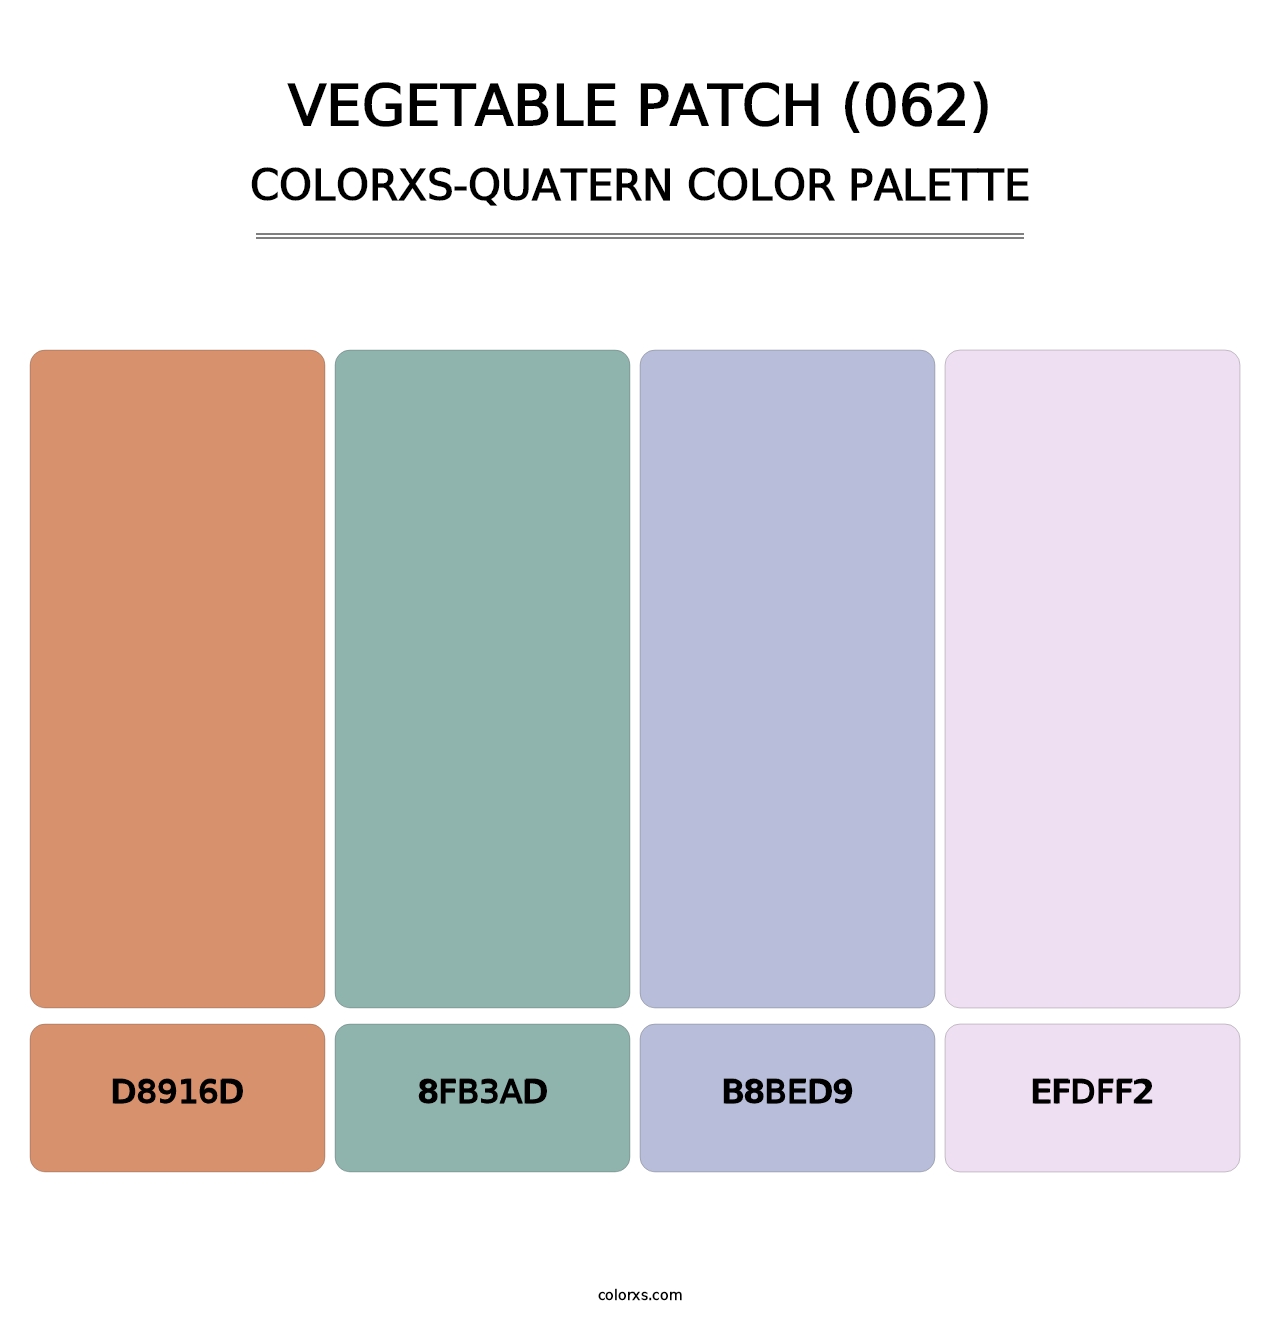 Vegetable Patch (062) - Colorxs Quatern Palette